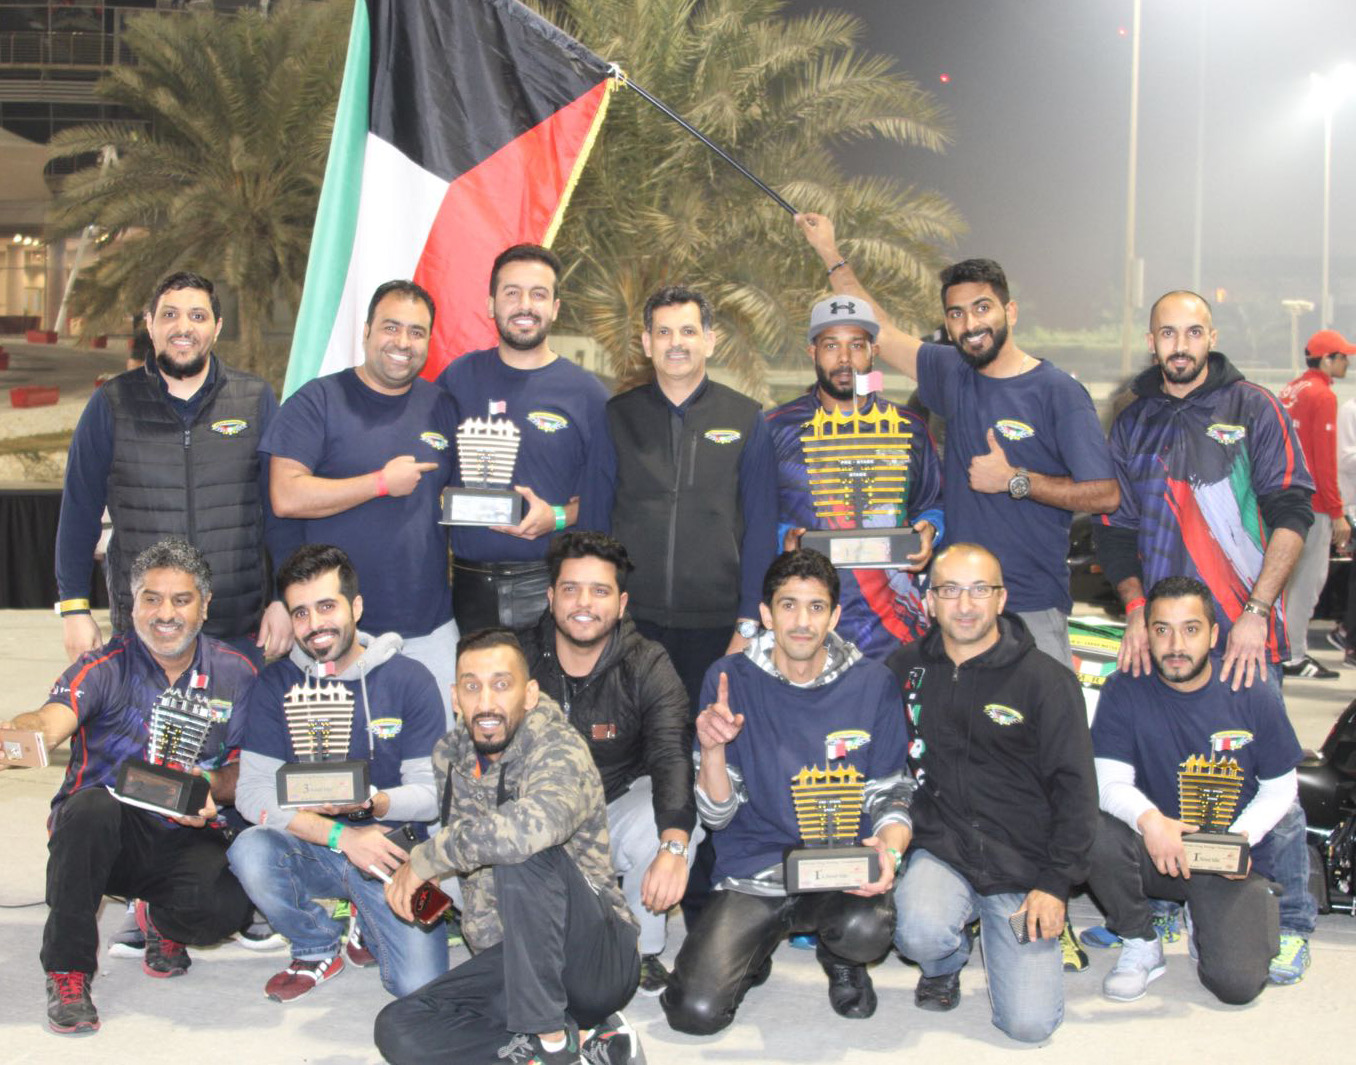 المتسابقون الكويتيون المشاركون في بطولة البحرين لسباقات السرعة ال(دراغ.ريس) التي اختتمت فعالياتها بالعاصمة البحرينية المنامة